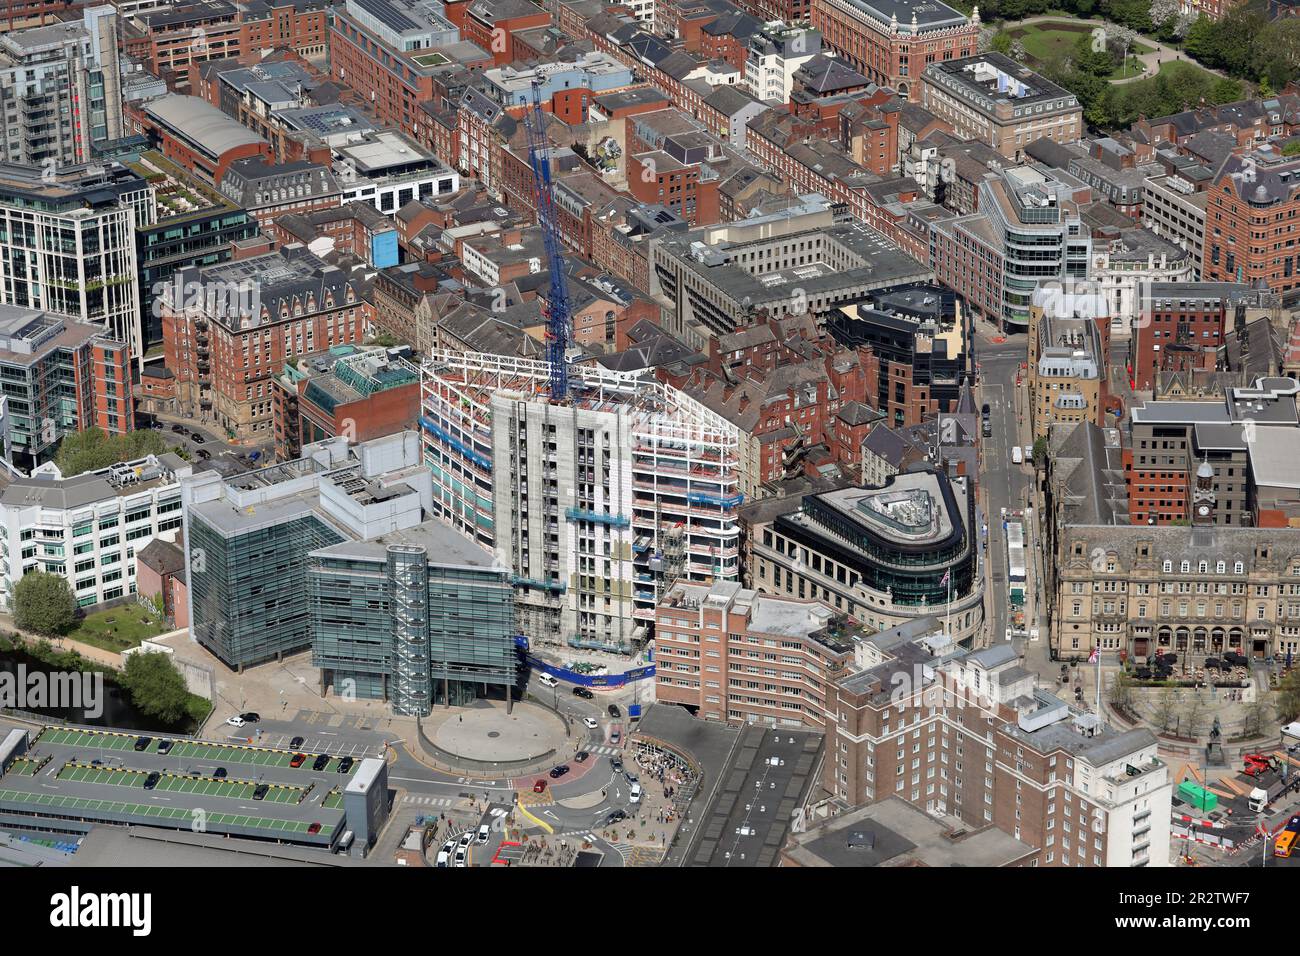 Luftblick auf das Stadtzentrum von Leeds mit Blick auf den Nordwesten vom City Square auf die Quebec Street & Infirmary Street, Leeds, West Yorkshire Stockfoto